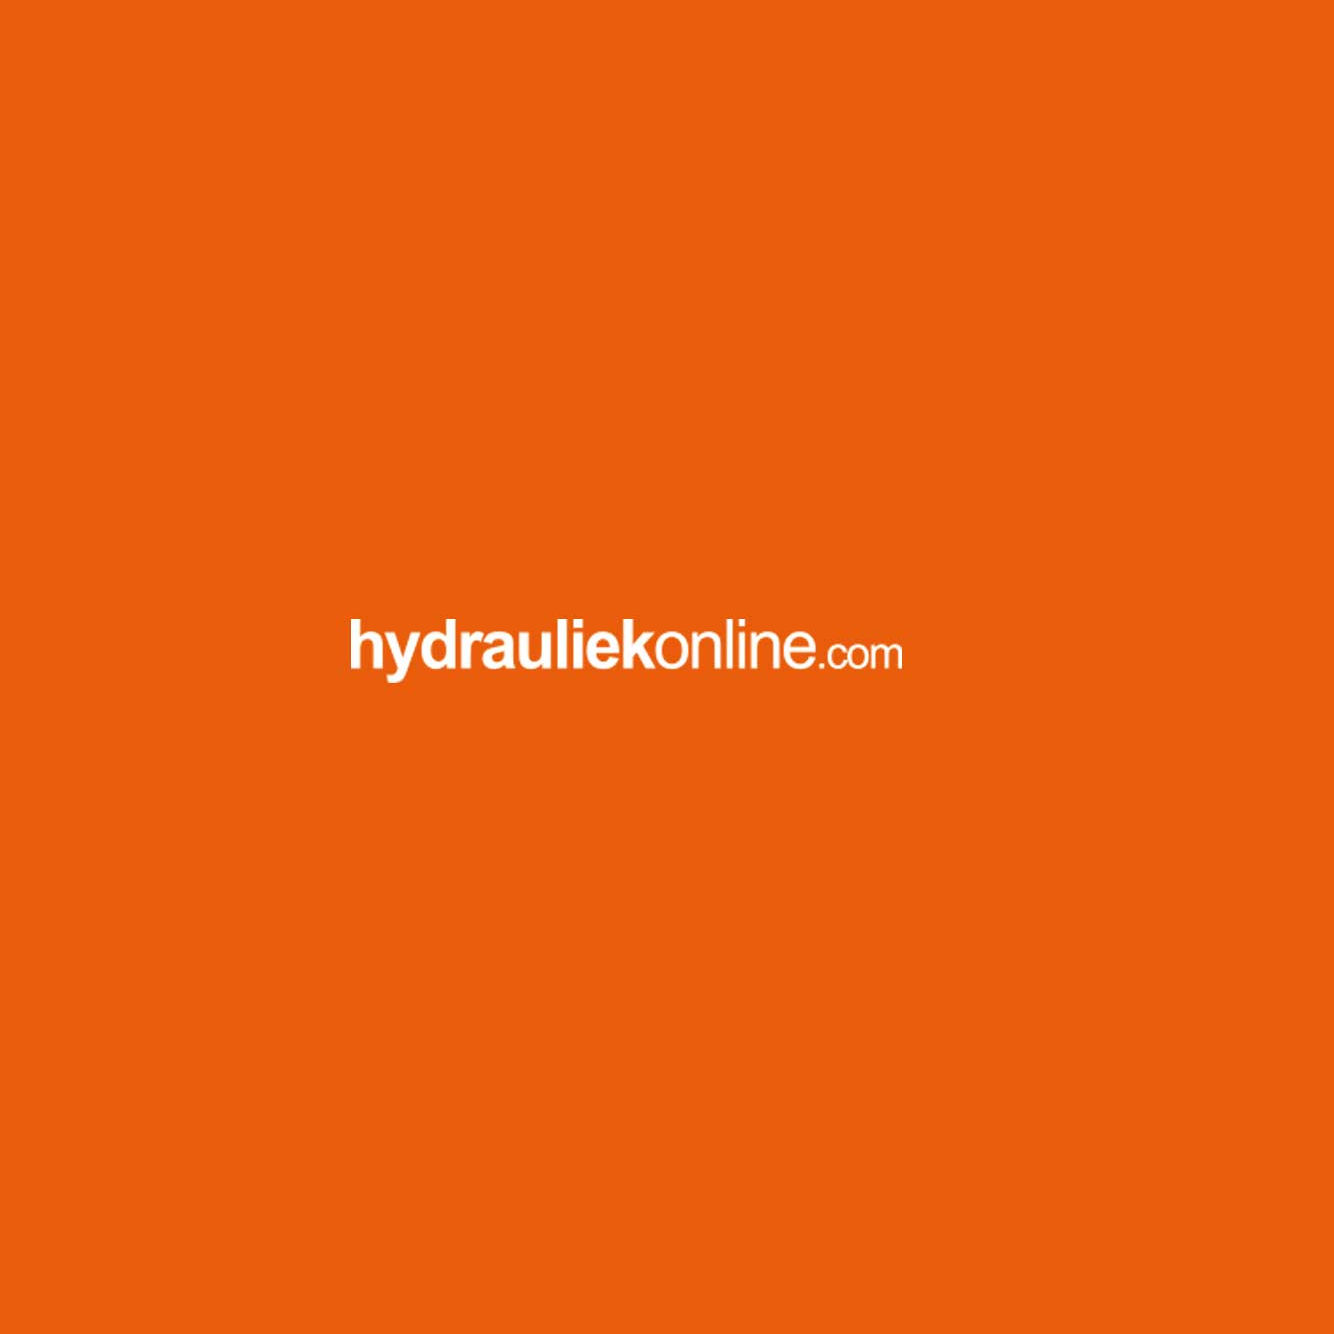 hydrauliek-online-1683.jpg